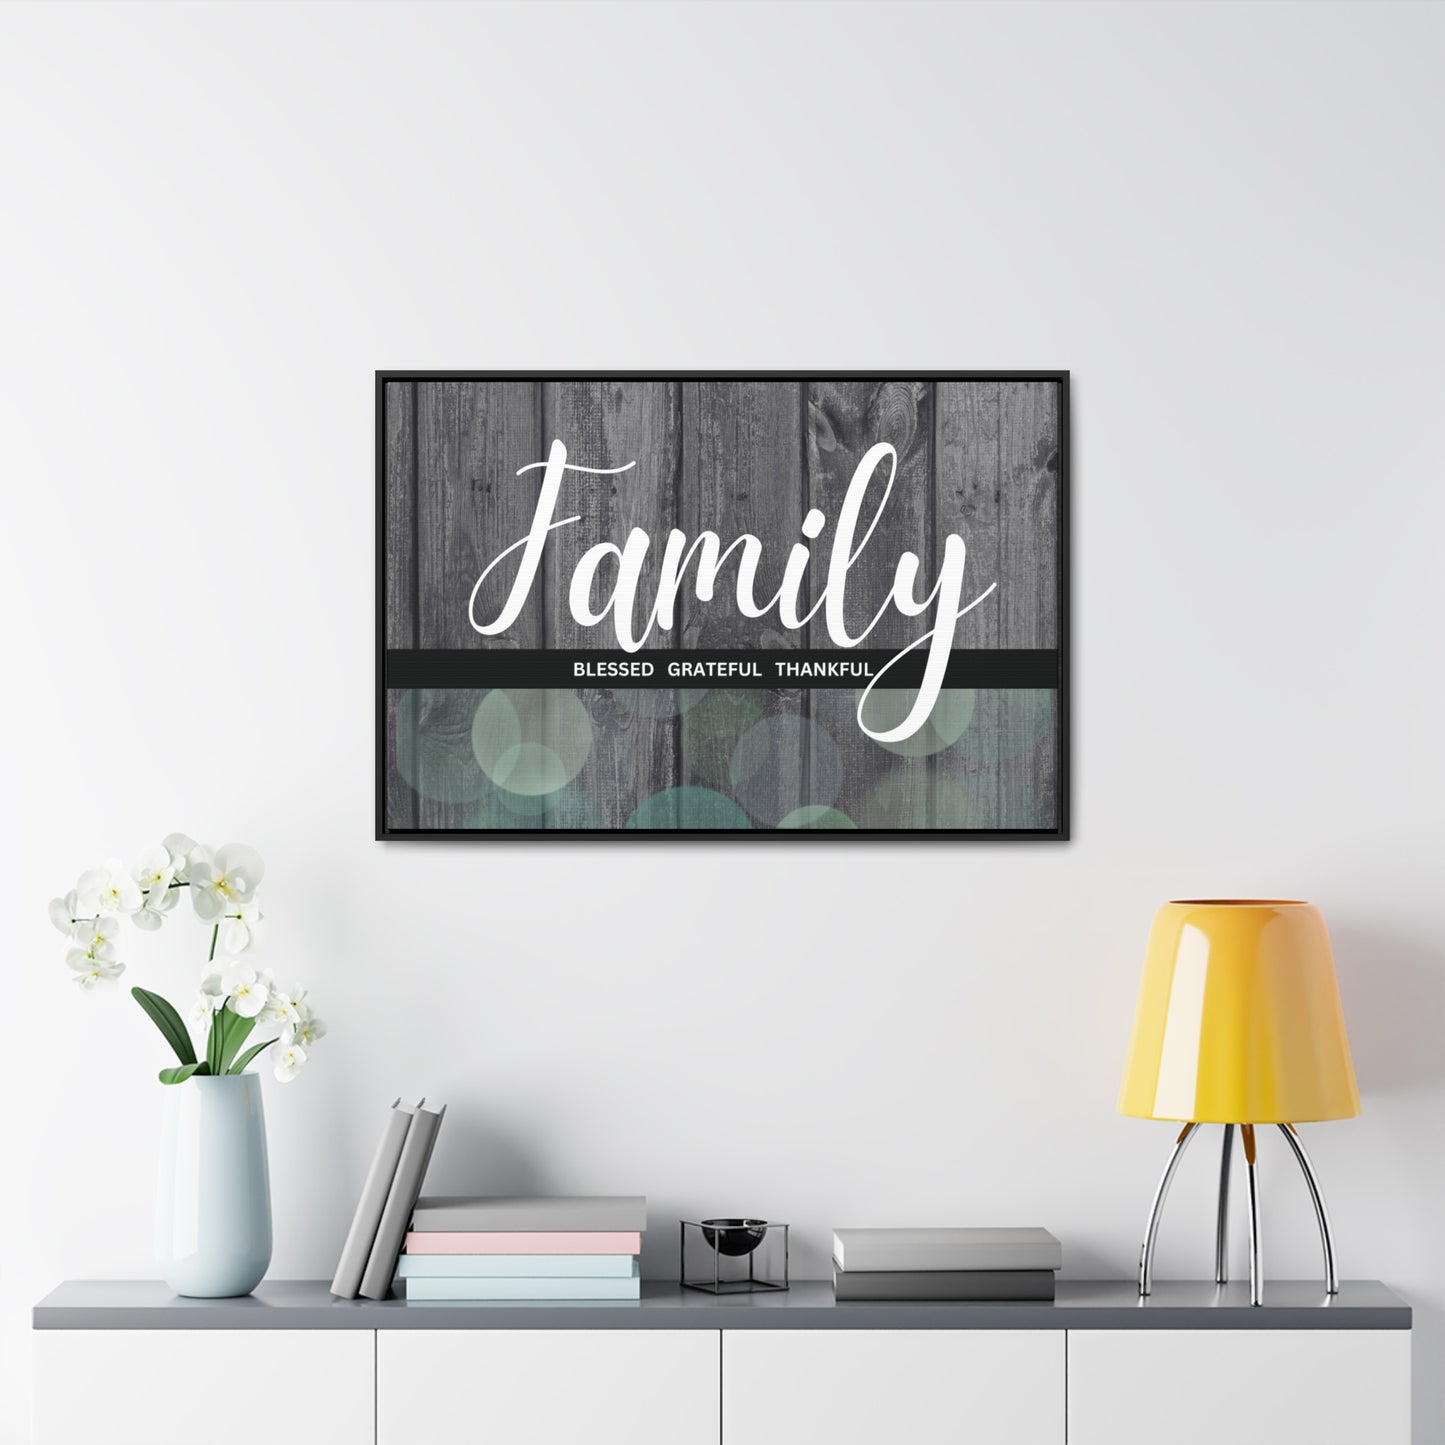 Arte cristiano de la pared: familia, bendecida, agradecida, agradecida (marco flotante)